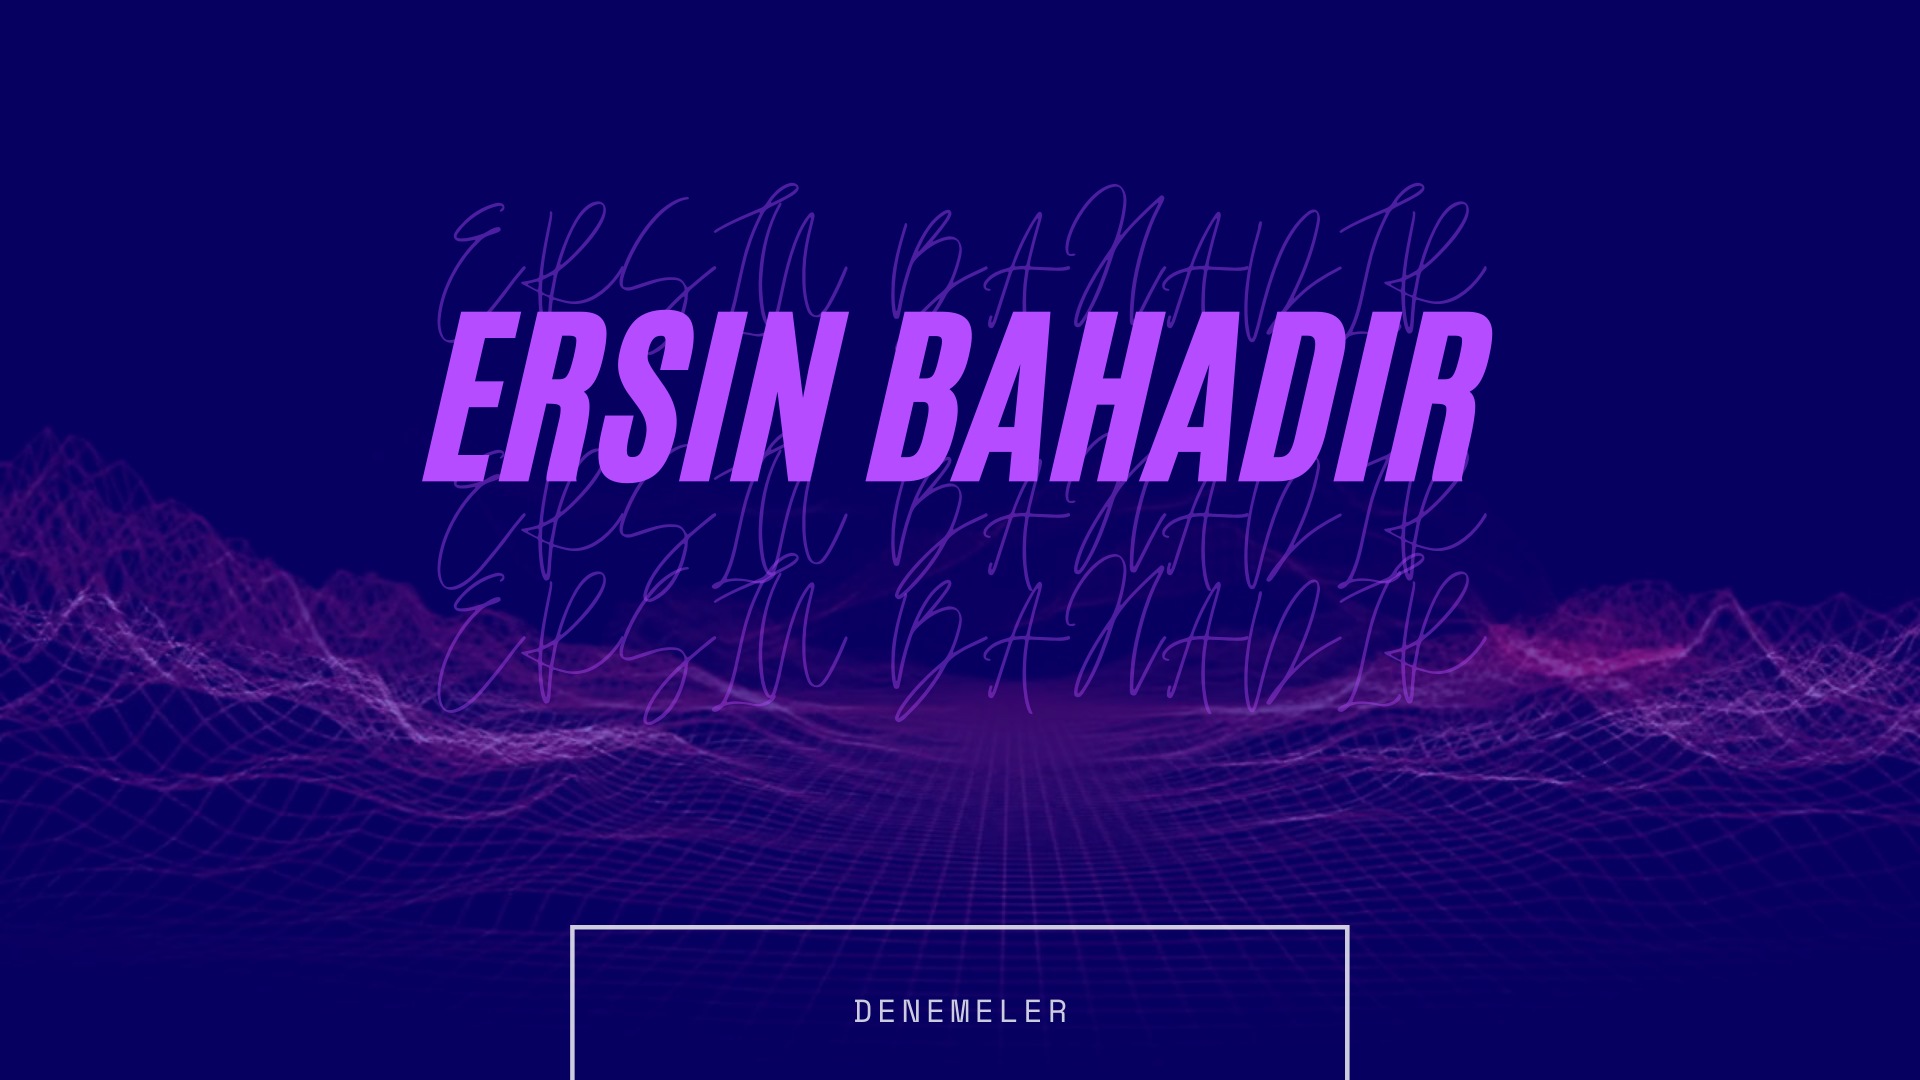 Ersin BAHADIR